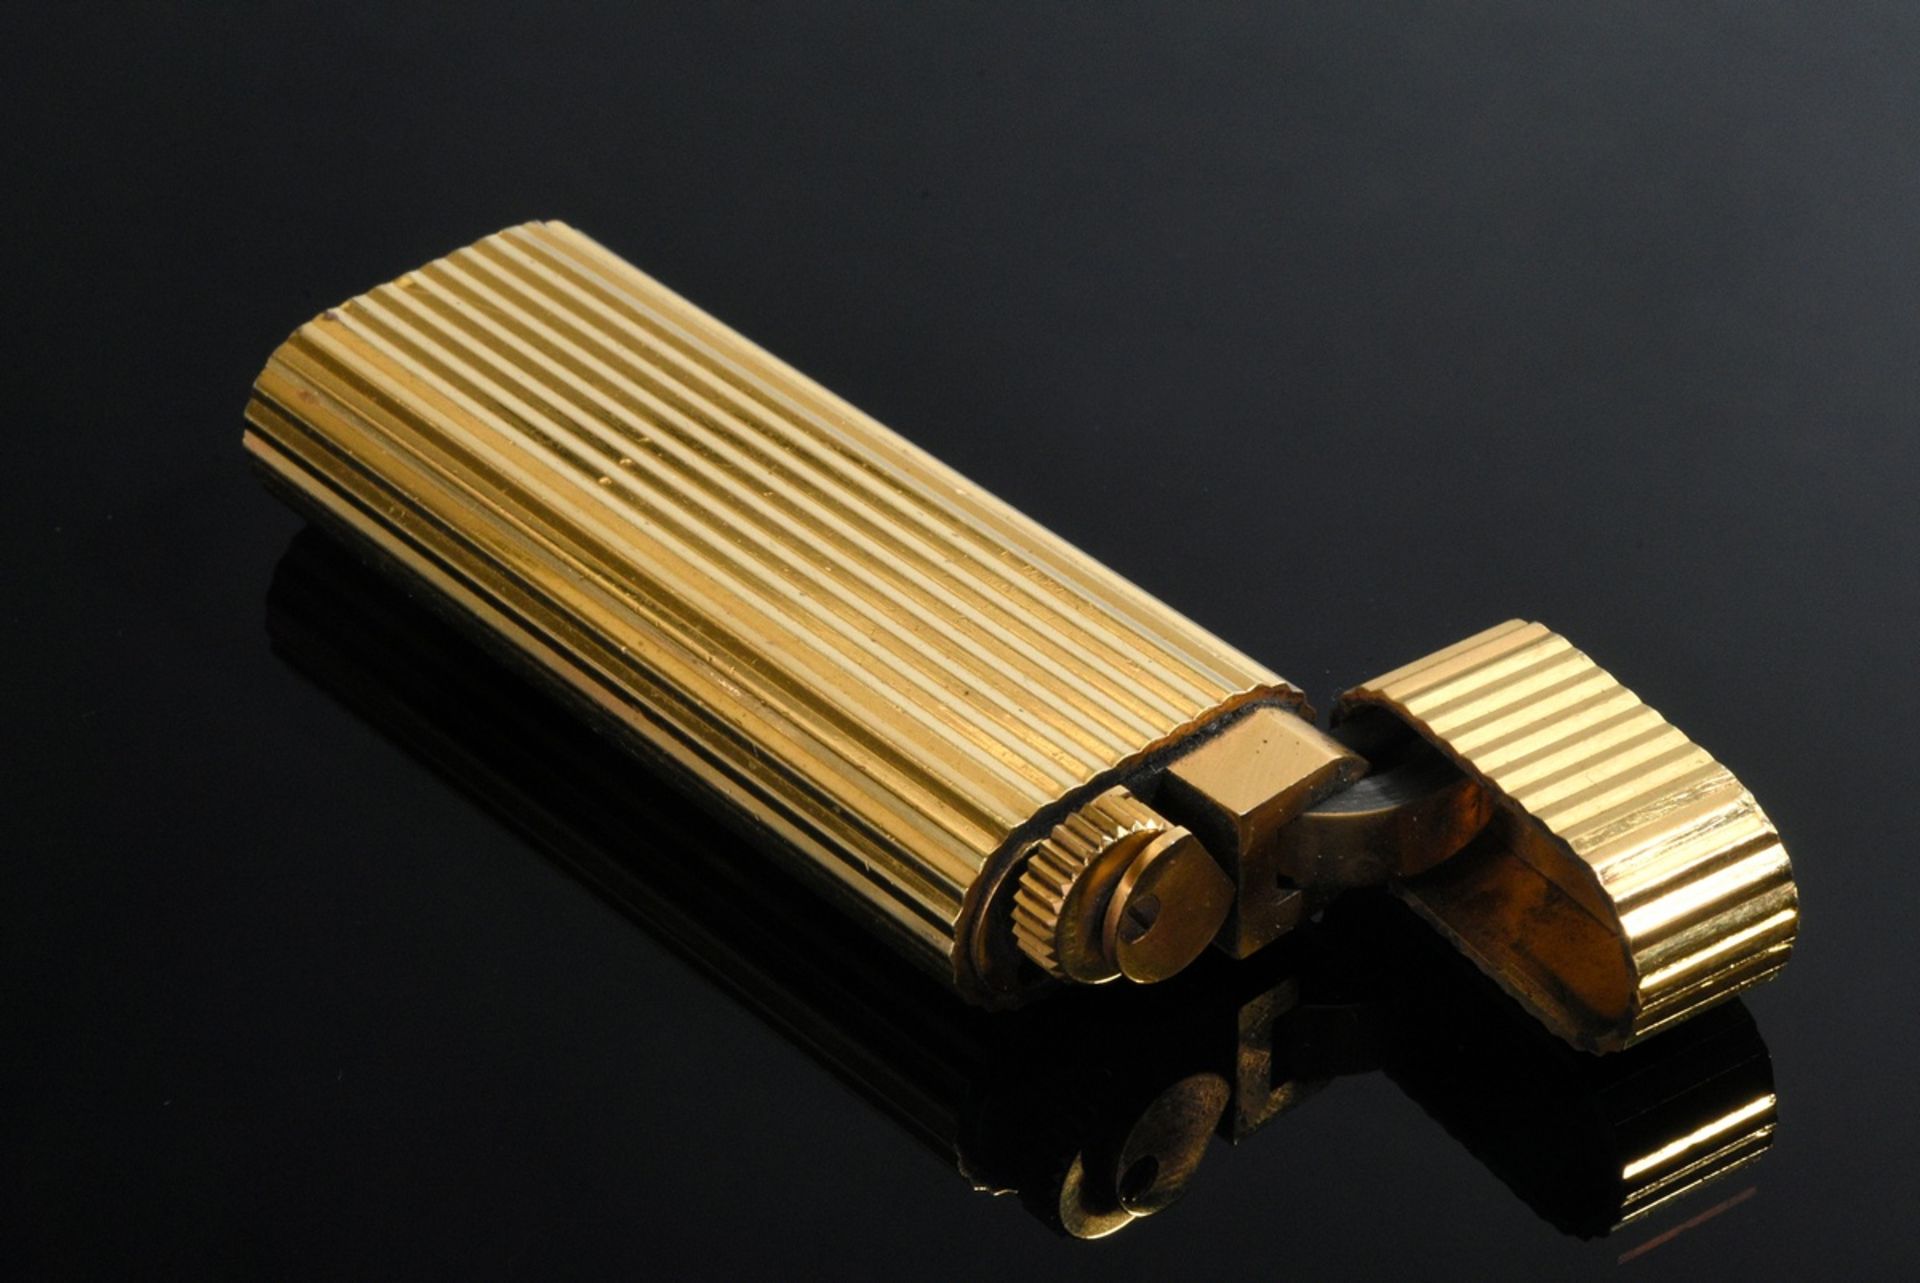 Le Must de Cartier Feuerzeug, Goldauflage, Nr. C 10863, 7x2,5cm, funktionstüchtig, Kratzer, starke  - Bild 2 aus 5